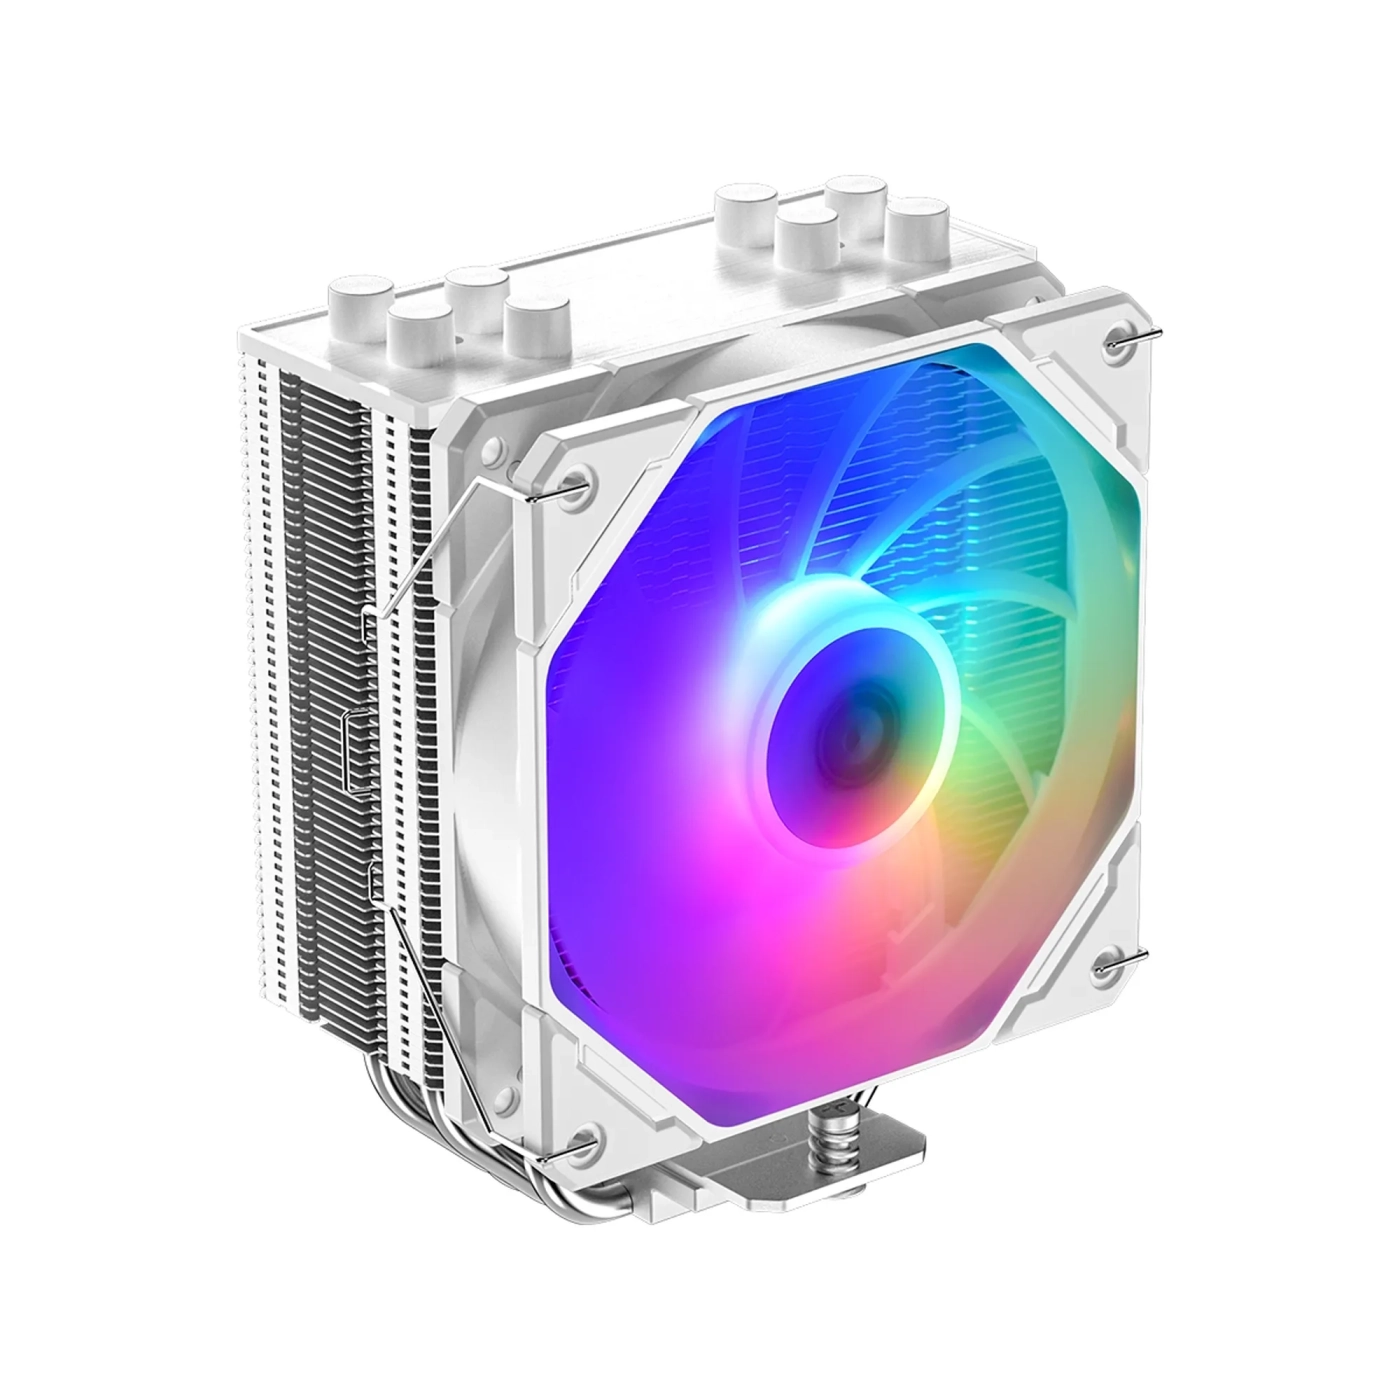 Купить Процессорный кулер ID-Cooling SE-224-XTS ARGB White - фото 2